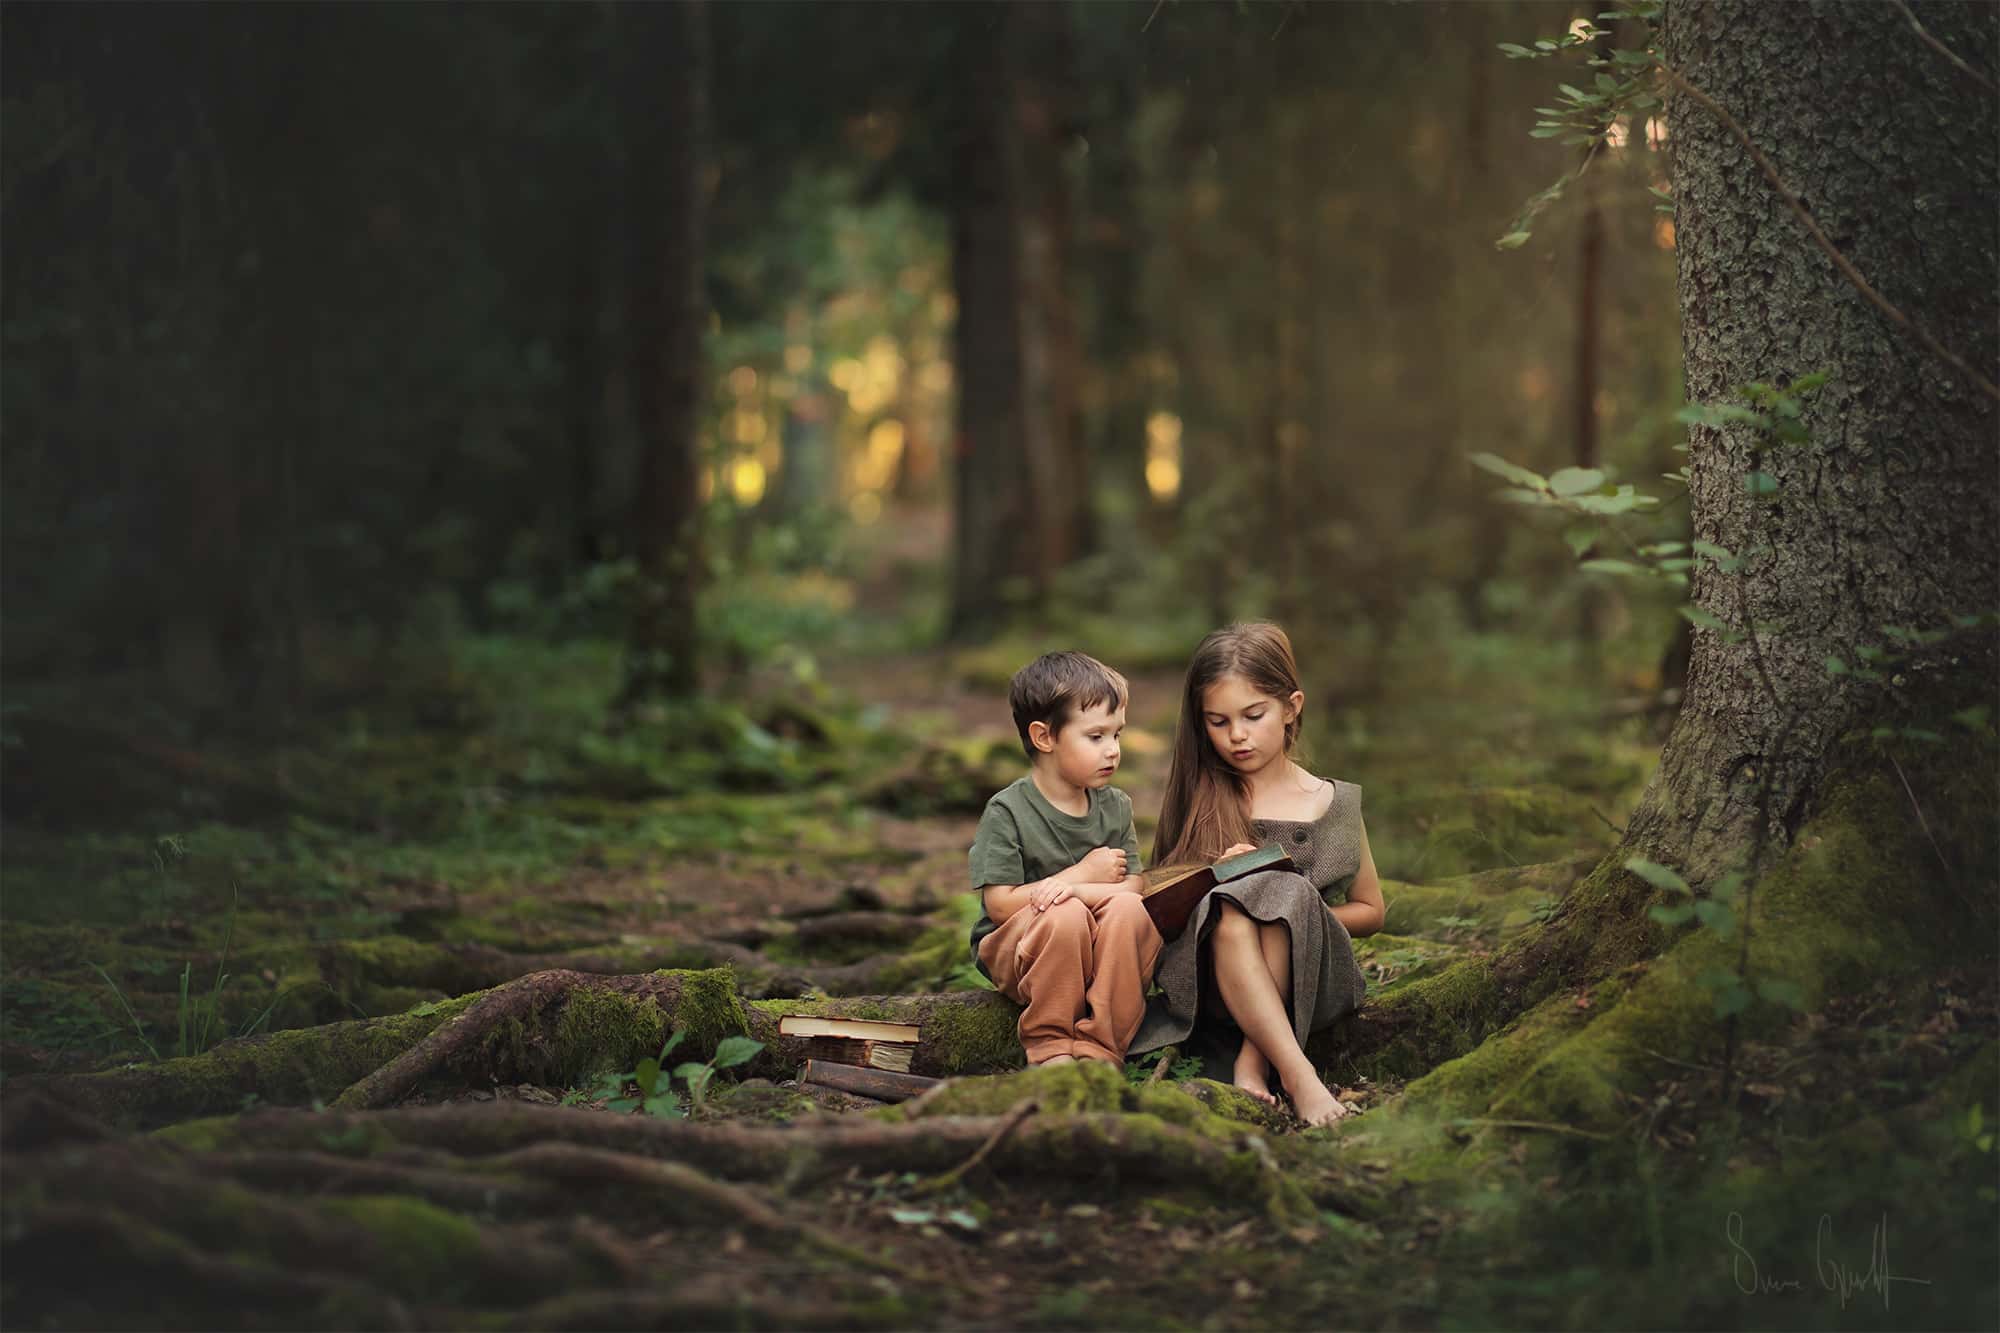 två barn sitter på en stock i skogen. Marken är full av rötter täckta av mossa. Flickan har en beige klänning och pojken en grön tröja och rostfärgade byxor.